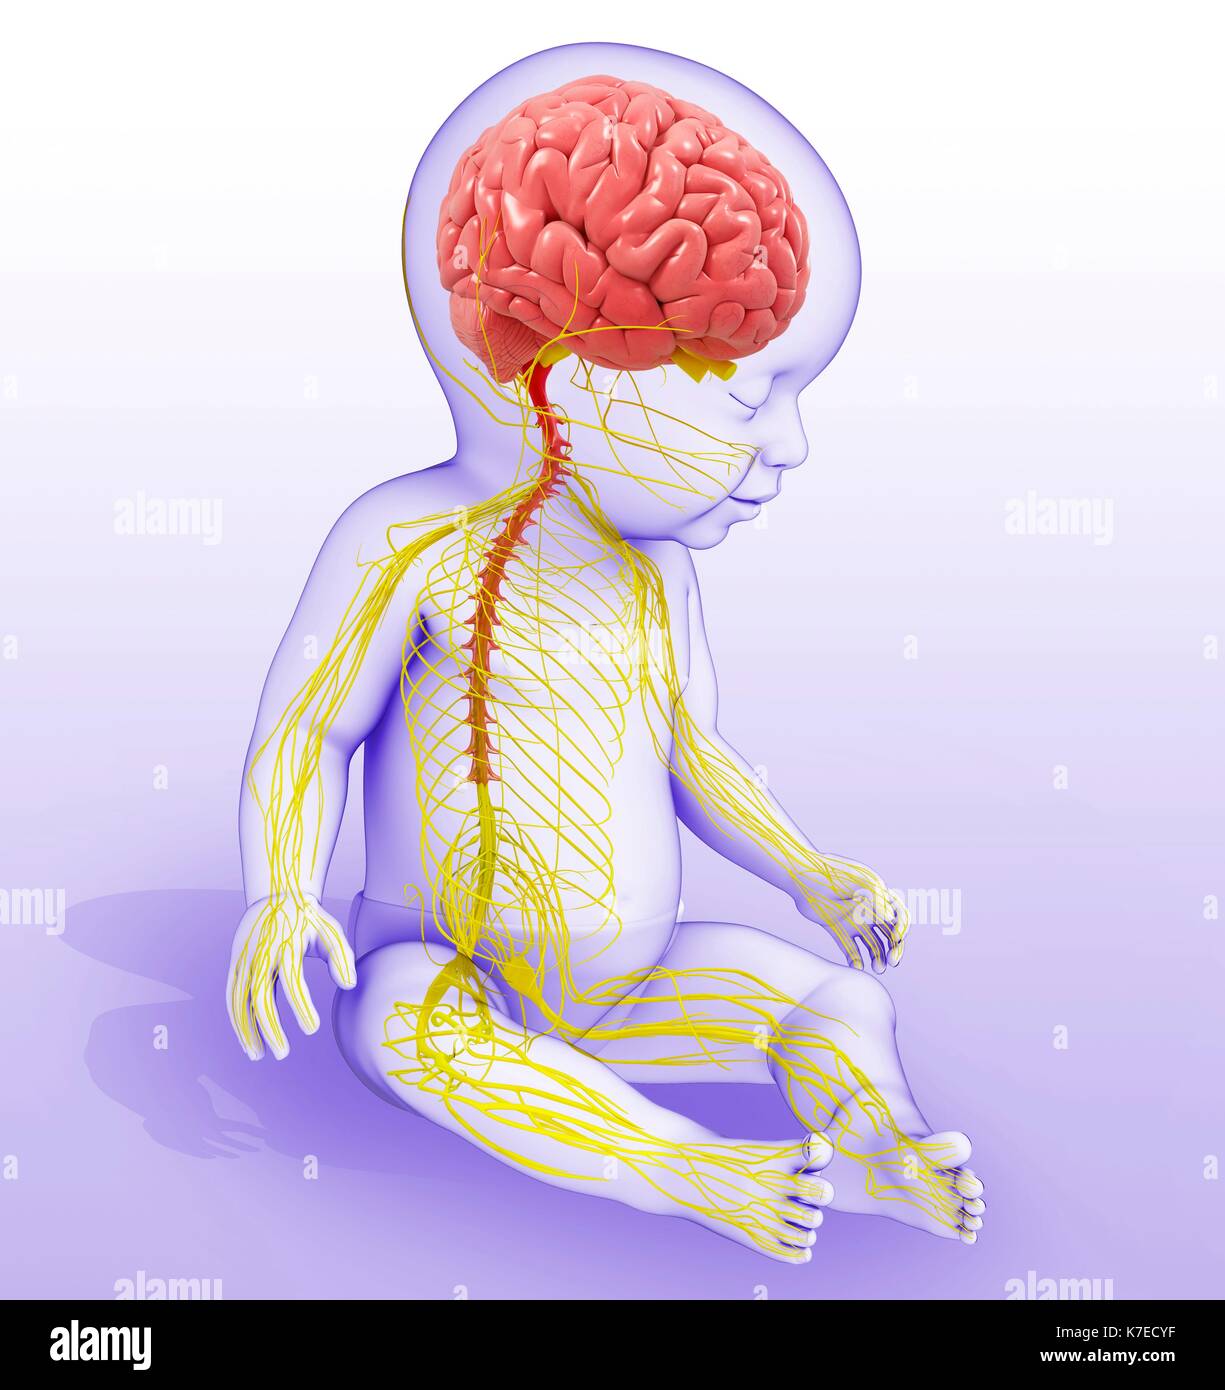 Центральная нервная система новорожденного. Нервная система ребенка. Нервная система новорожденного ребенка. Центральная нервная система ребенка. Спинной мозг ребенка и взрослого.